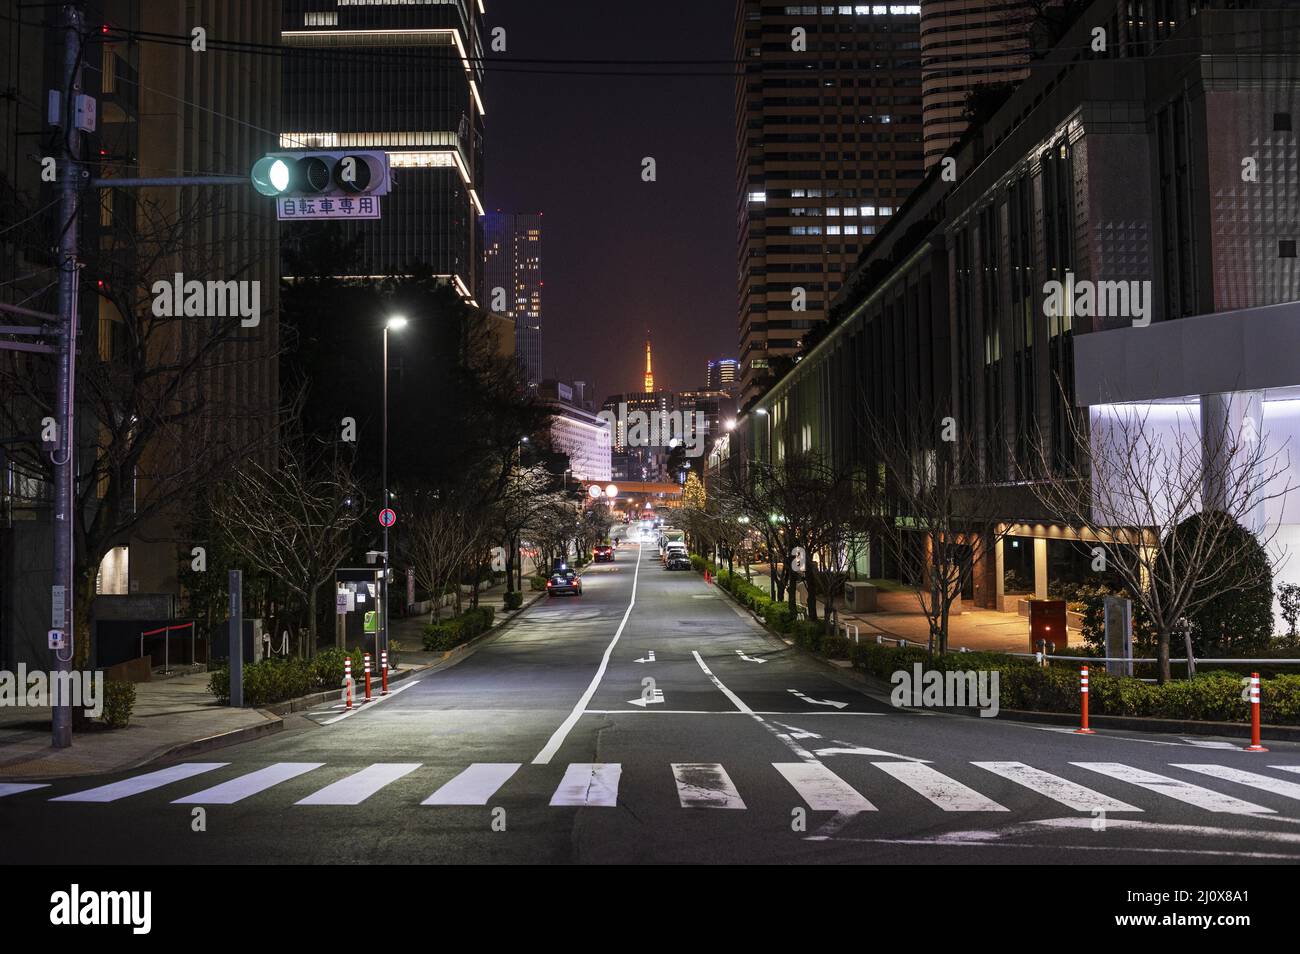 Noche japón paisaje urbano. Hermoso concepto fotográfico de alta calidad Foto de stock